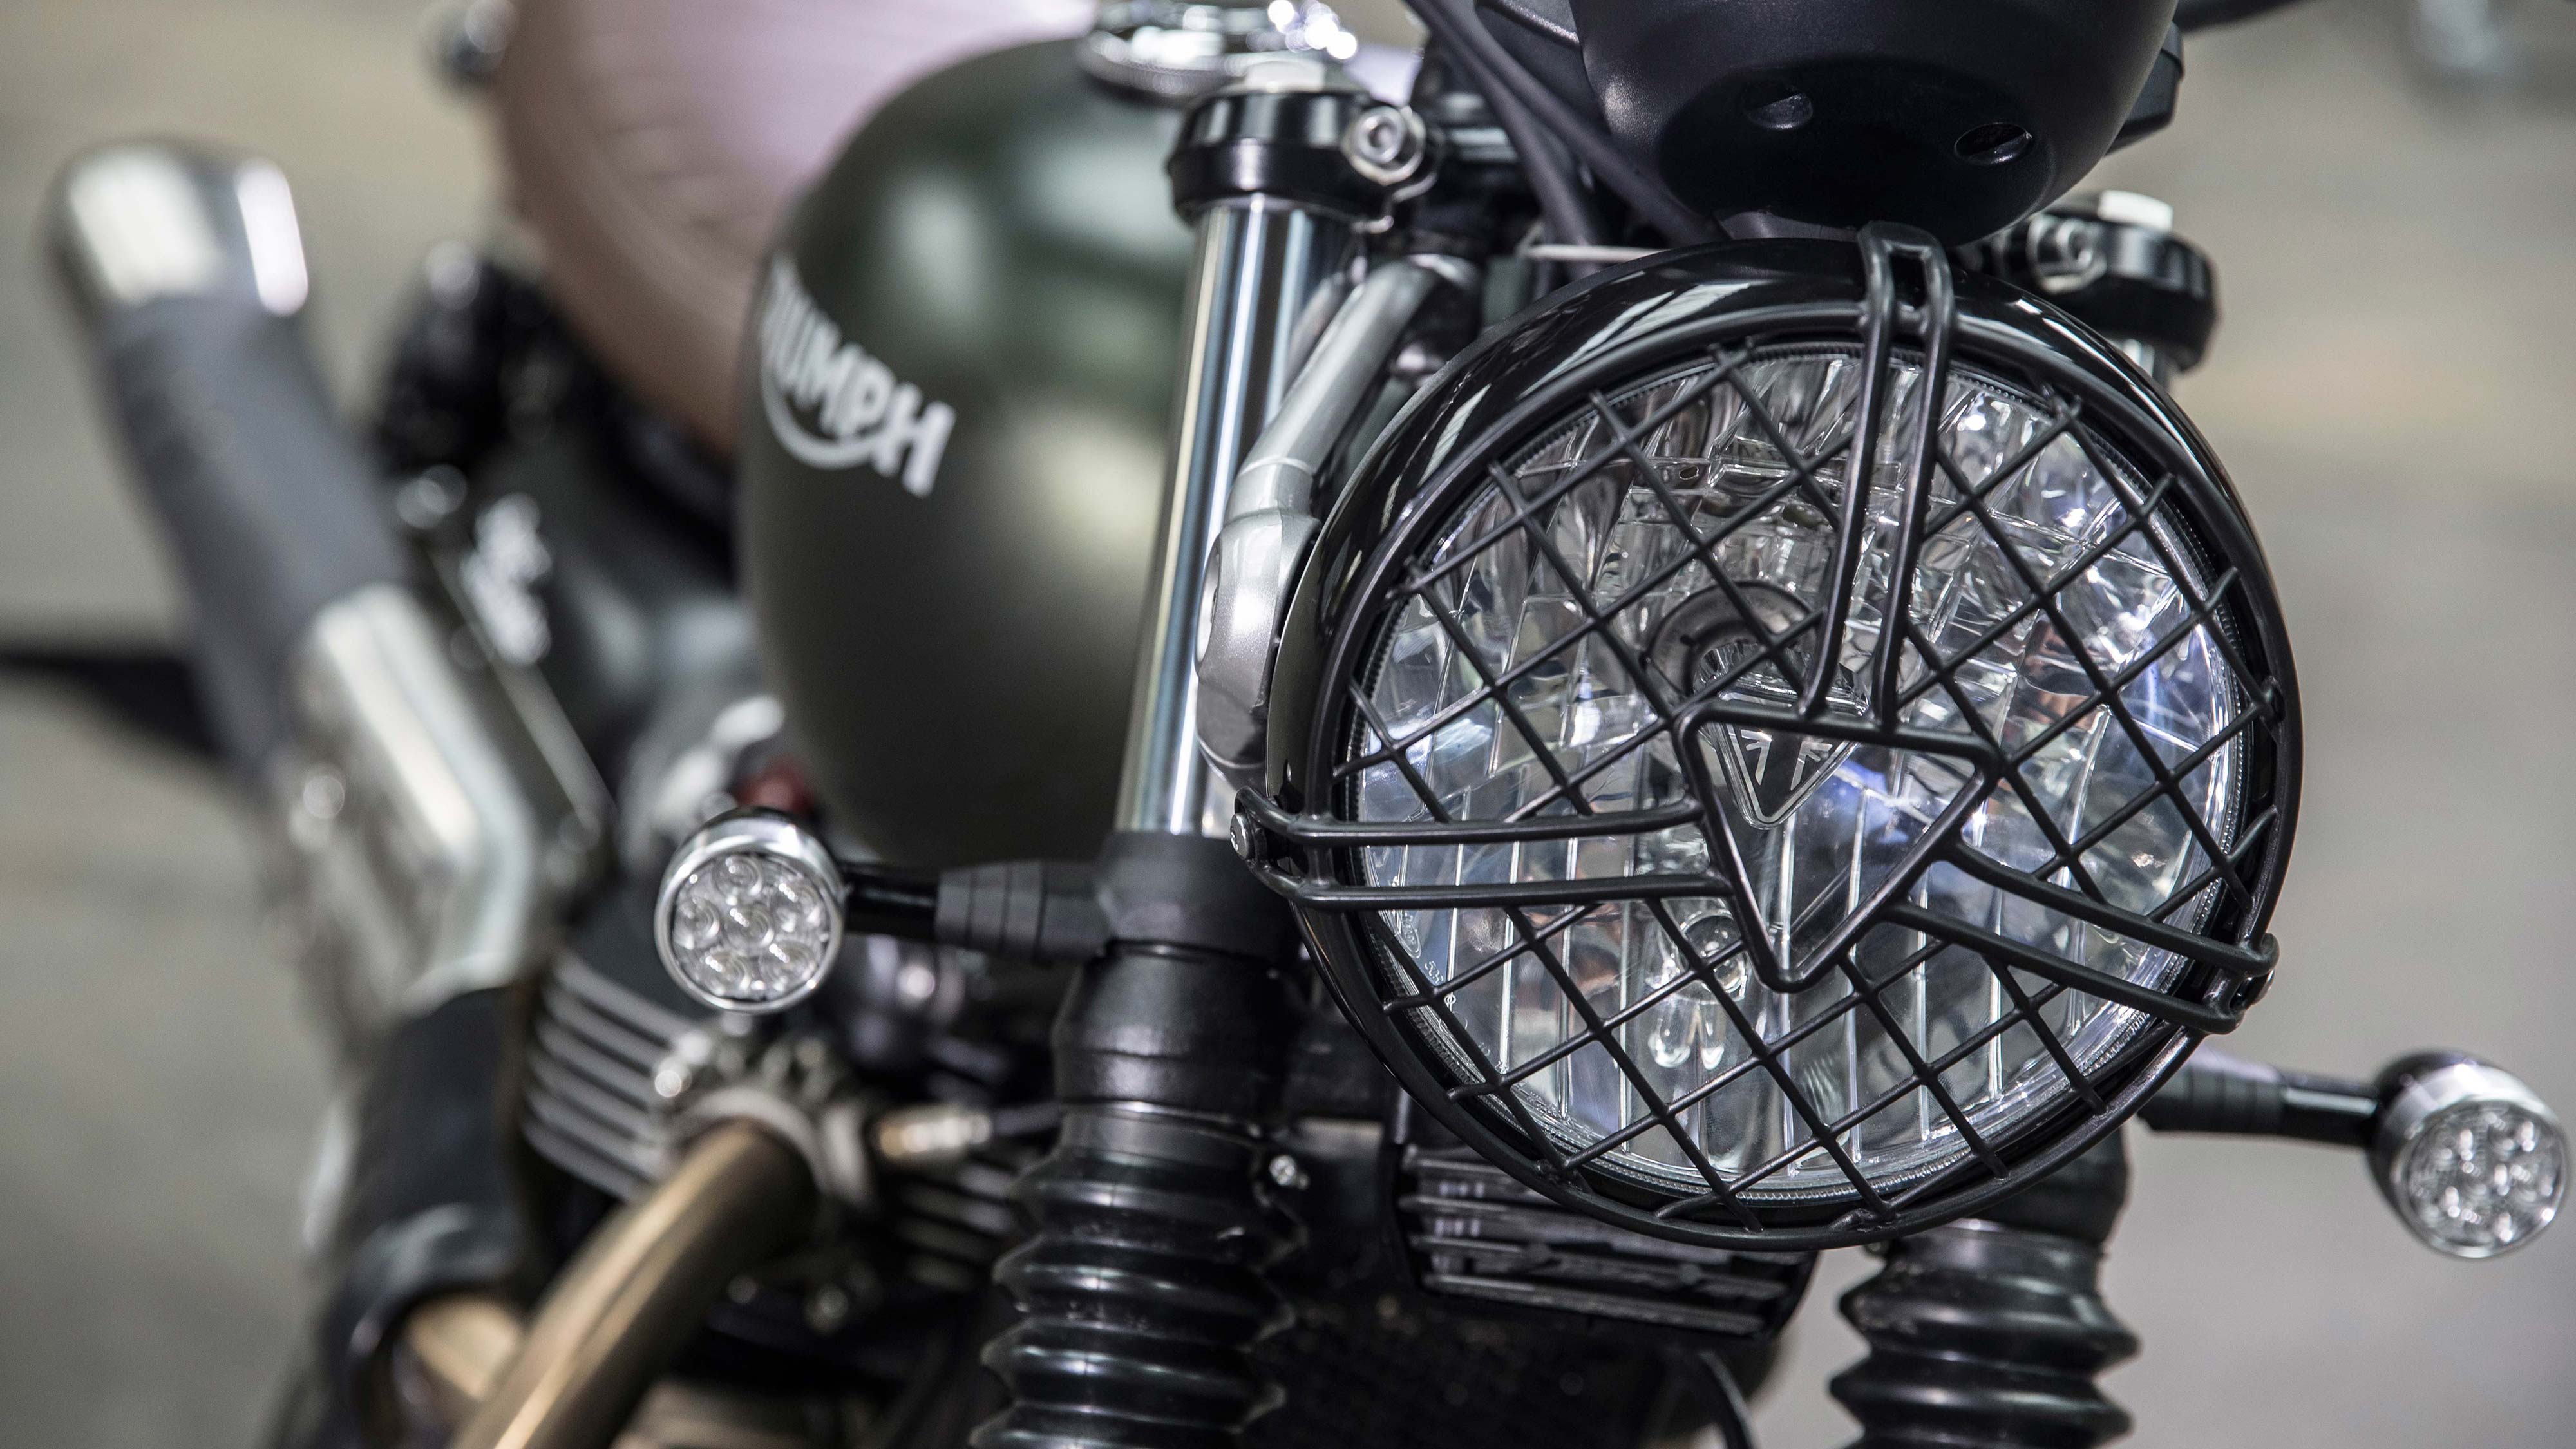 Scrambler Accessories Triumph Motorcycles - Street Scrambler Headlight Grill , HD Wallpaper & Backgrounds